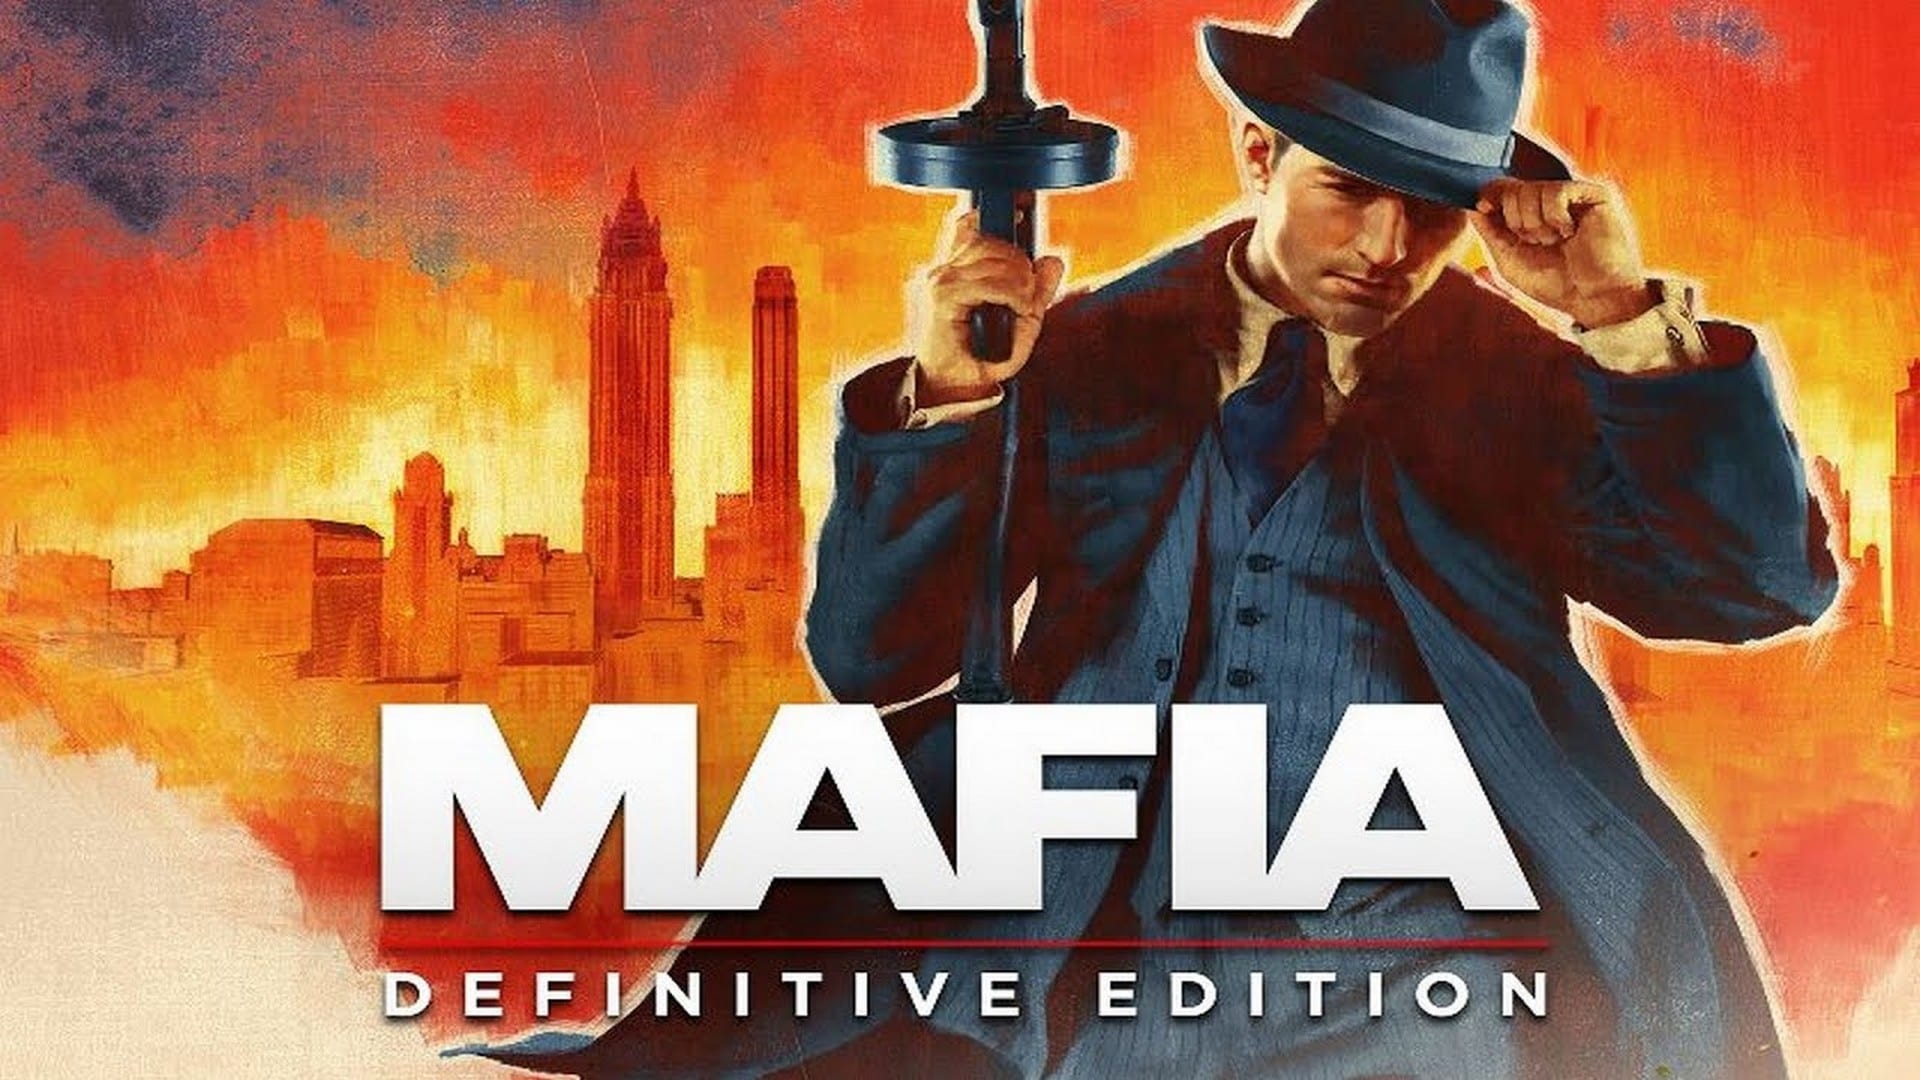 The Mafia definitive edition